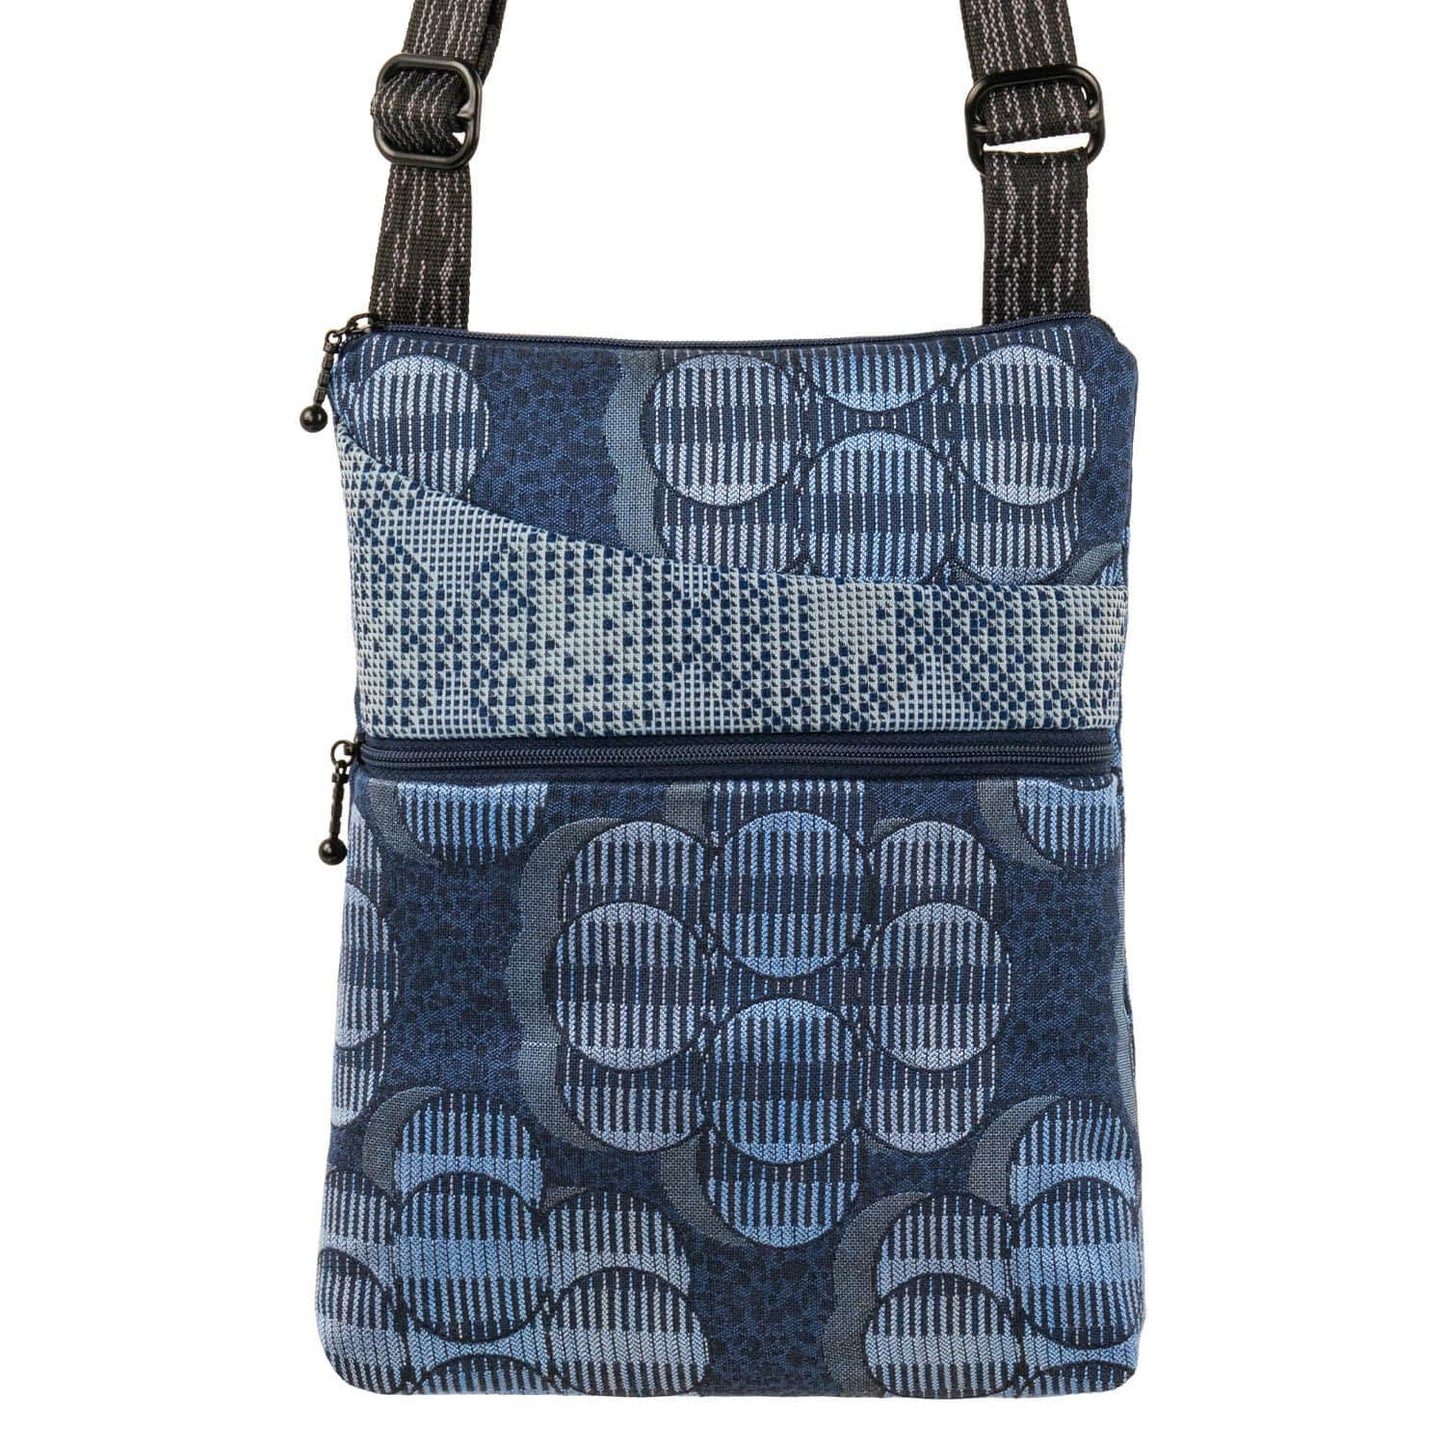 BAG Pocket Bag in Lunar Blue